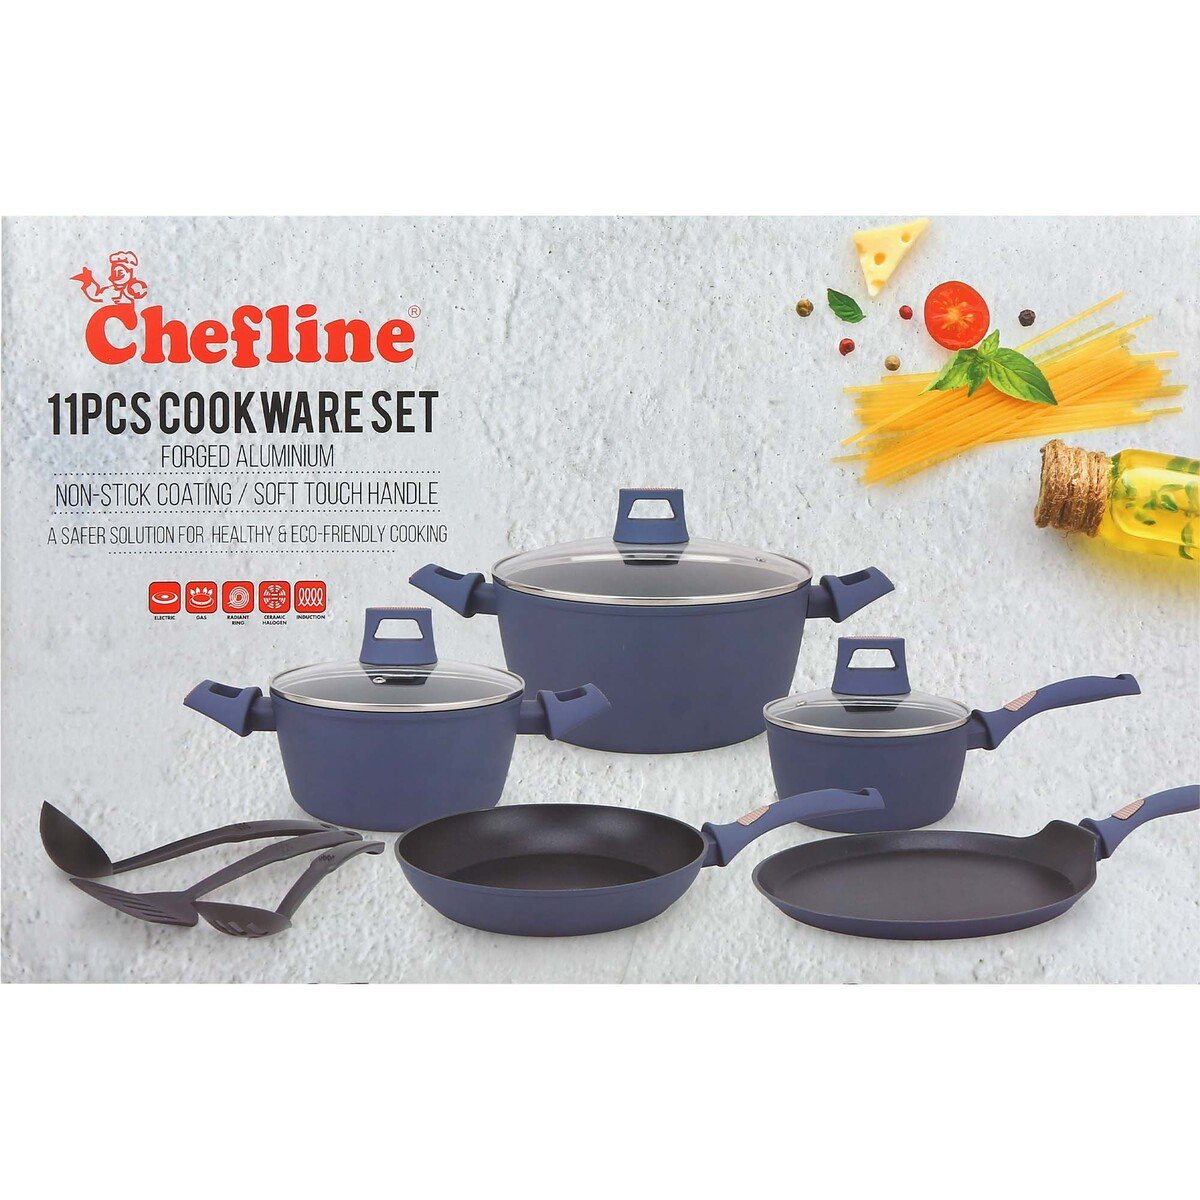 Chefline Forged Aluminium Cookware Set 11pcs Induction